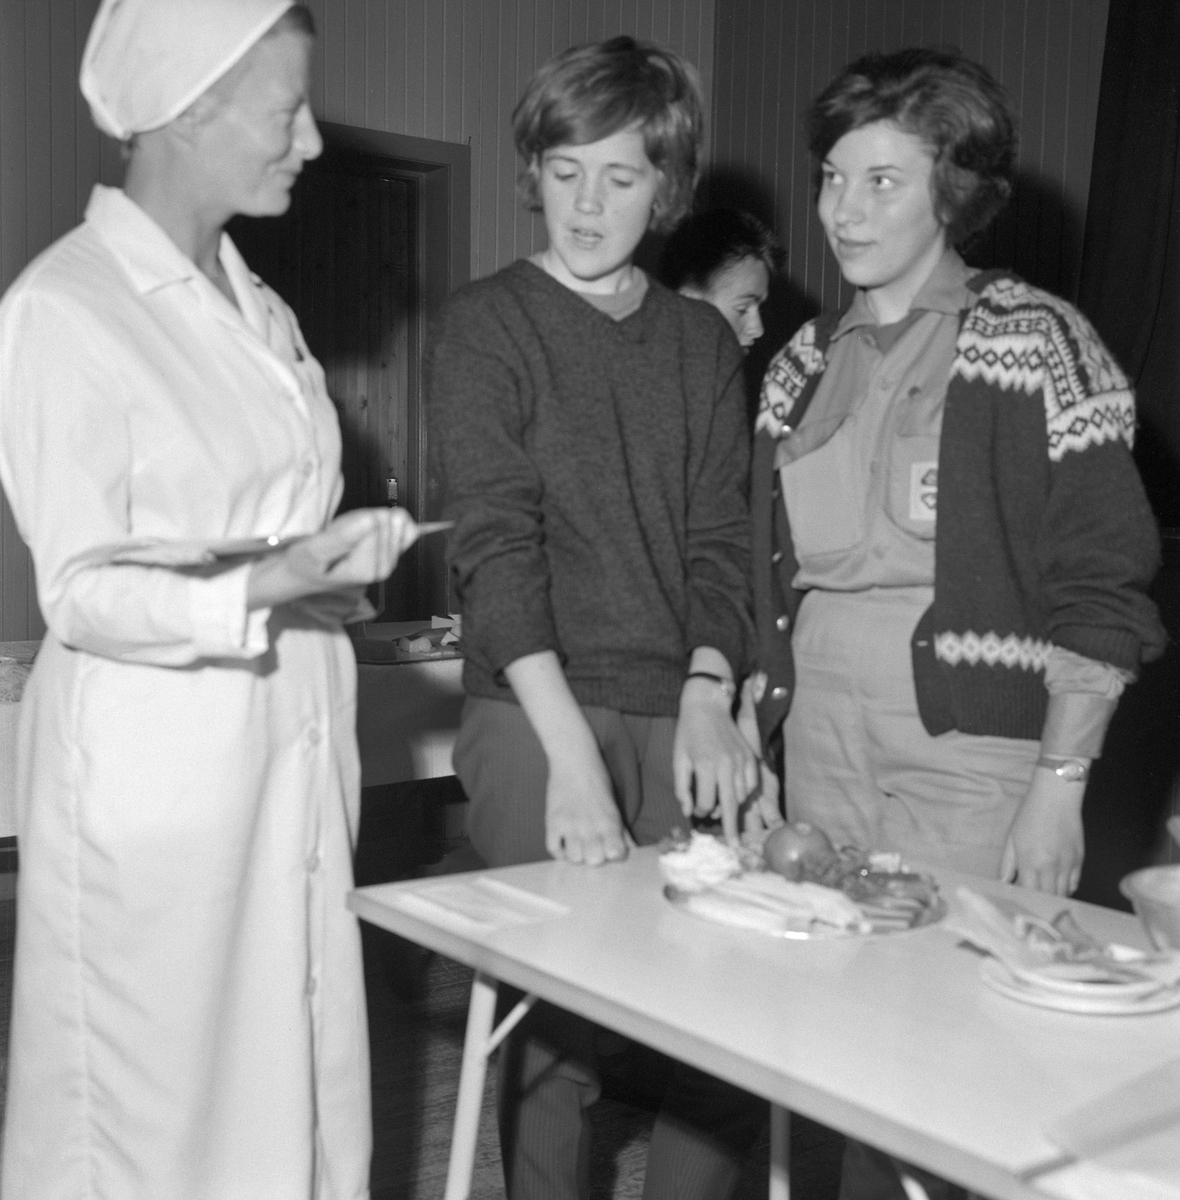 Presentasjon av 4H-prosjekt undr 4H-leir i Søre Osen i Trysil i Hedmark i 1962. Vi ser tre kvinner framfor et respetexbord, der det sto et ostefat. Sannsynligvis var det en den unge kvinna i midten som hadde anrettet osten. Den kvitkledde kvinna til venstre var sannsynligvis en fagperson, muligens en husstellærer, som skulle vurdere arbeidet. Kvinna til høyre hadde et 4H-emblem på blusen, delvis dekt av strikkejakka. Det er nærliggende å anta at hun representerte organisasjonen.